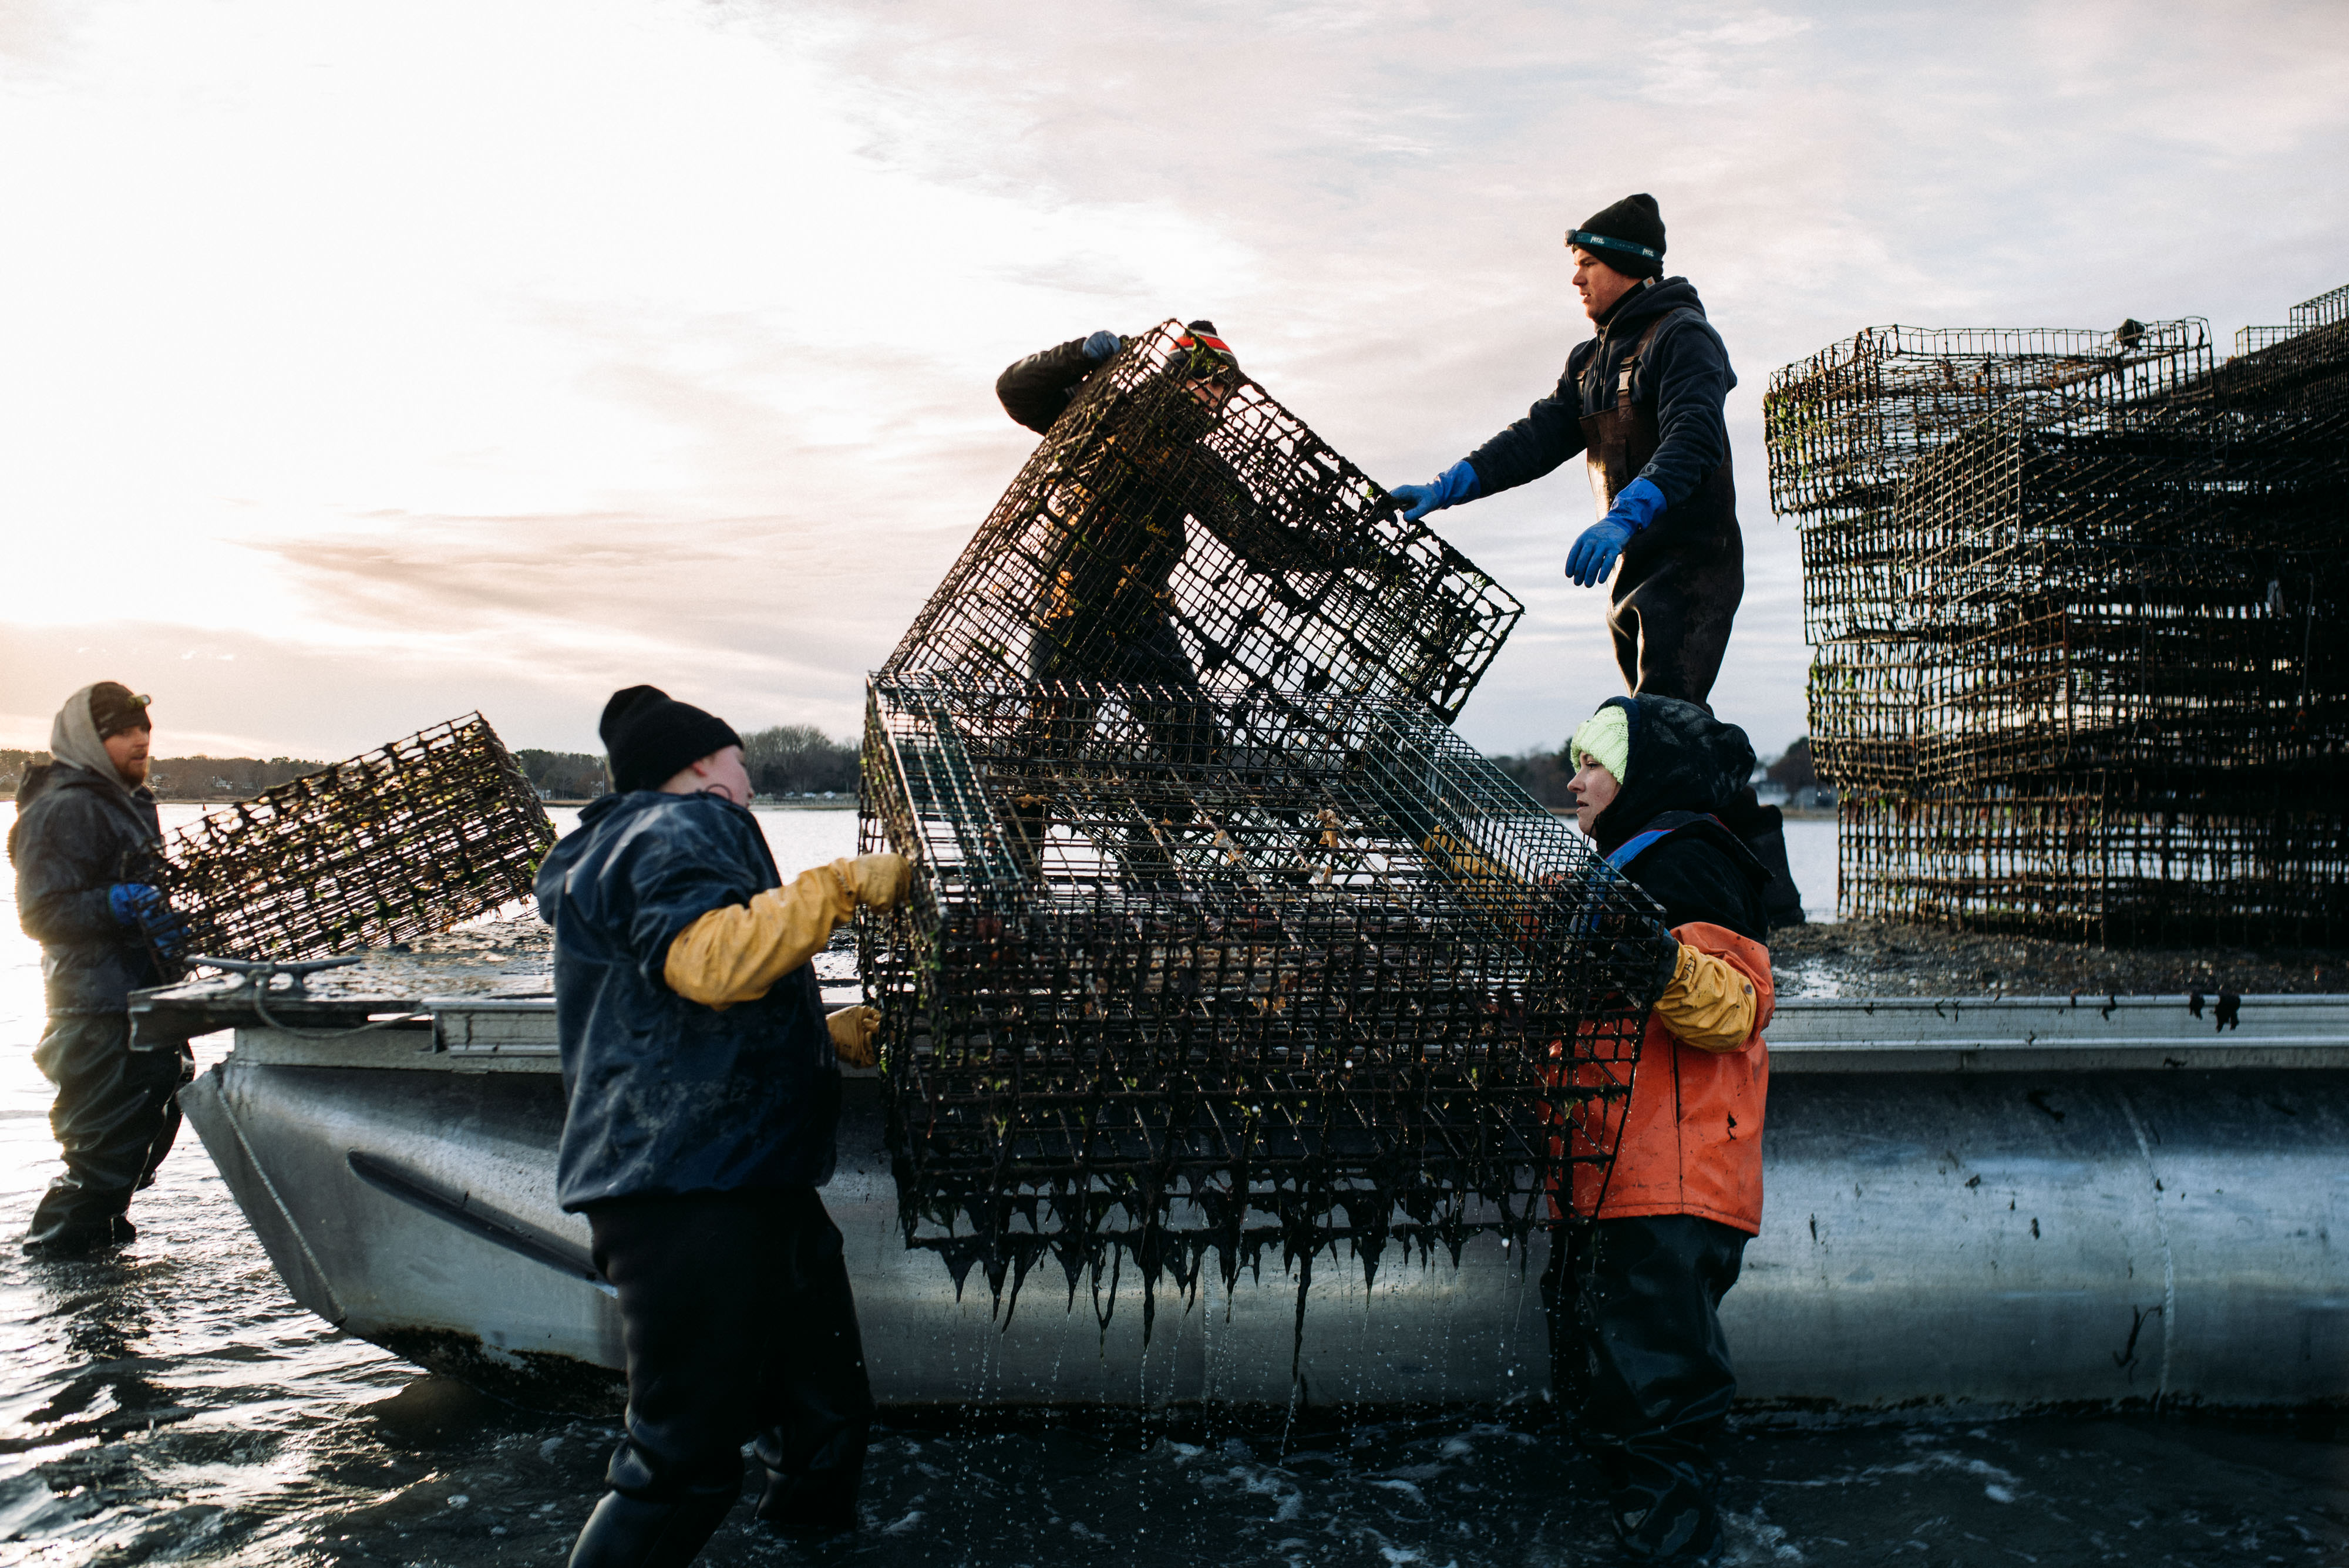 Pescadores levantan del mar jaulas para captura